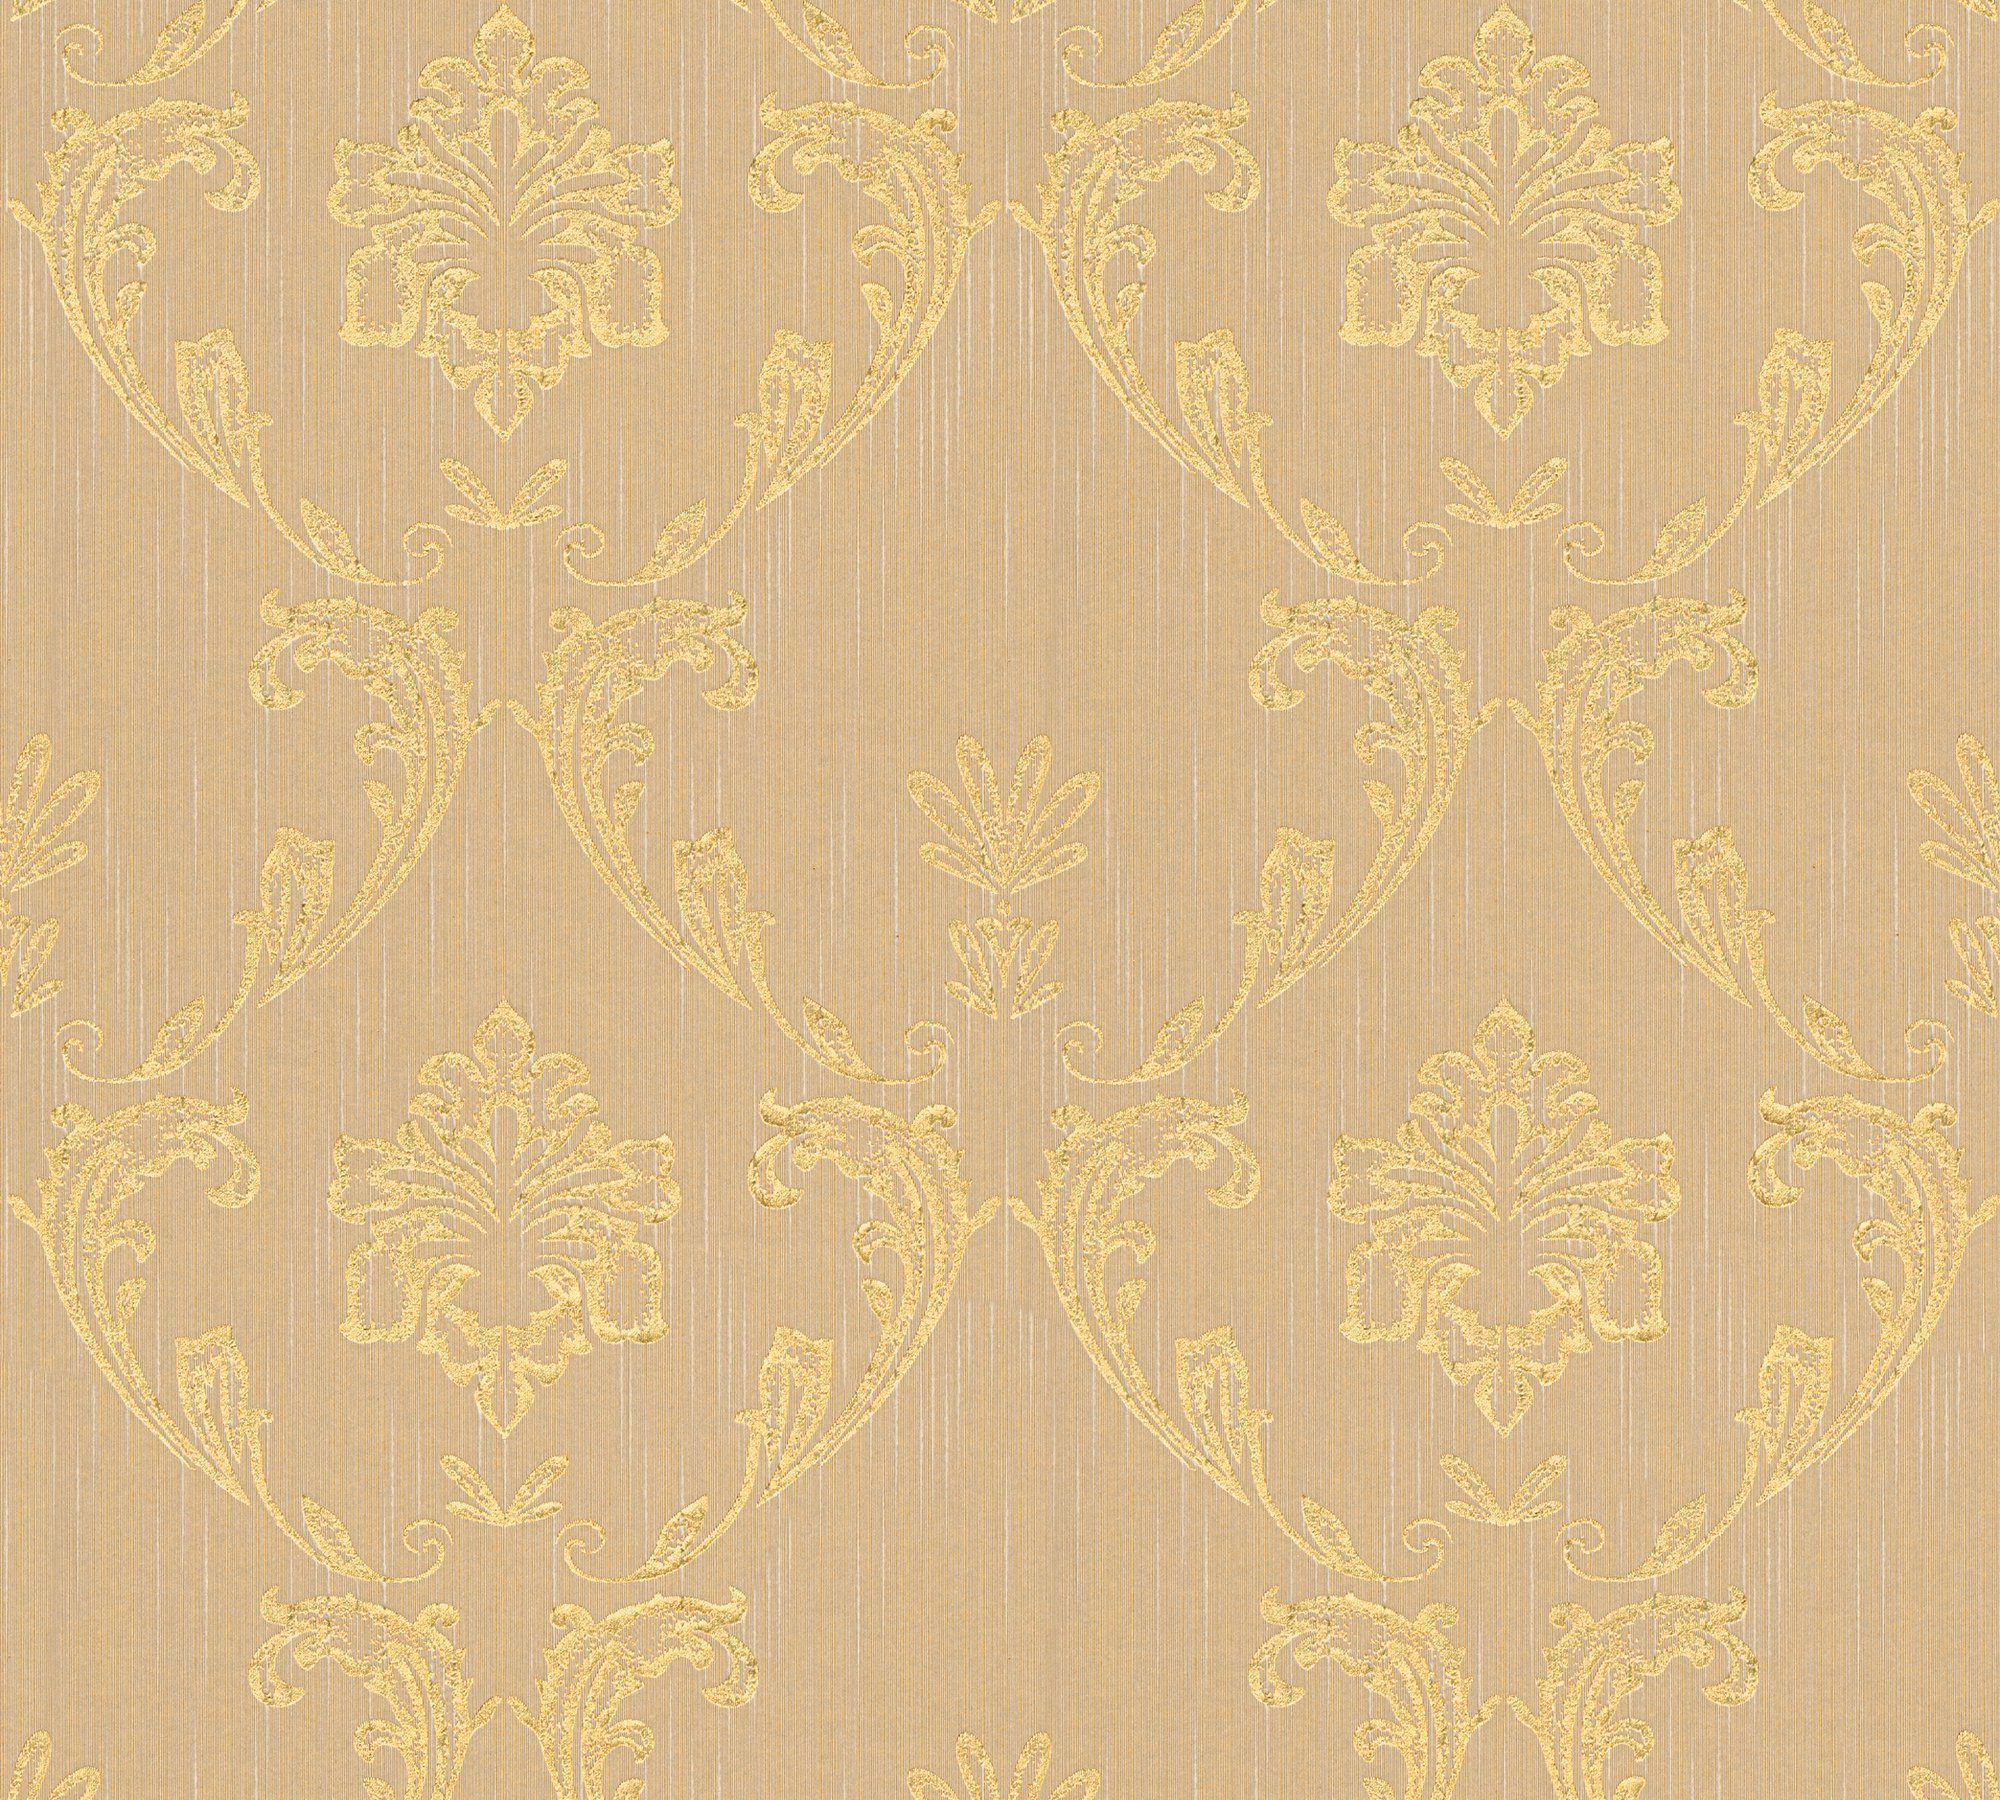 Barock, Textiltapete glänzend, Création Metallic Barock Architects samtig, Ornament Silk, Tapete A.S. matt, Paper gold/beige